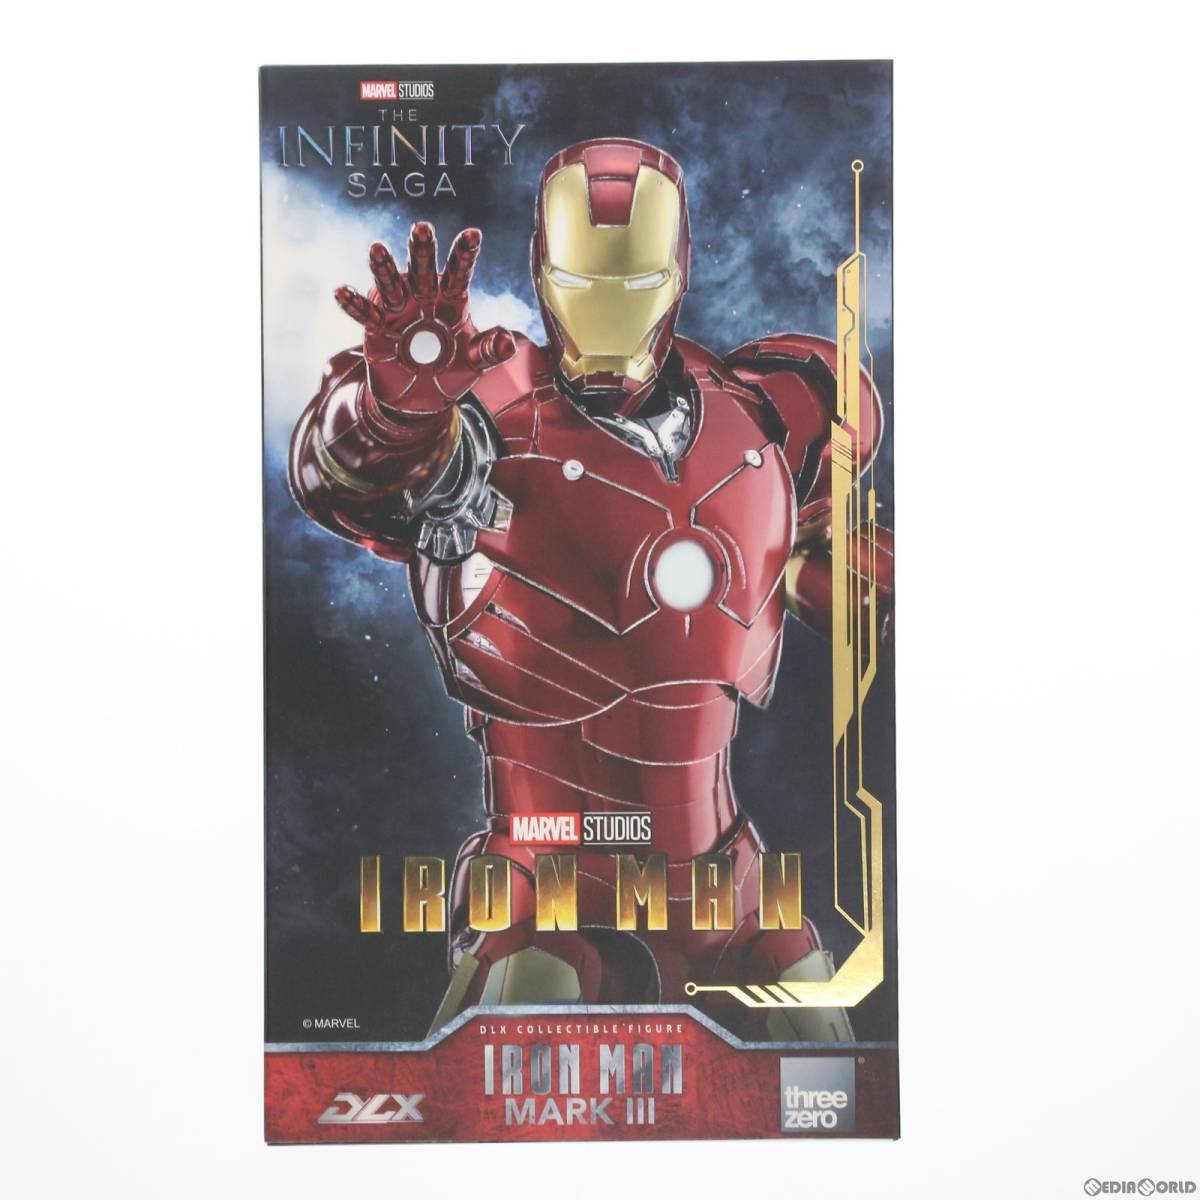 【中古】[FIG]DLX Iron Man Mark 3(DLX アイアンマン・マーク3) Marvel Studios: The Infinity Saga(マーベル・スタジオ: インフィニティ・